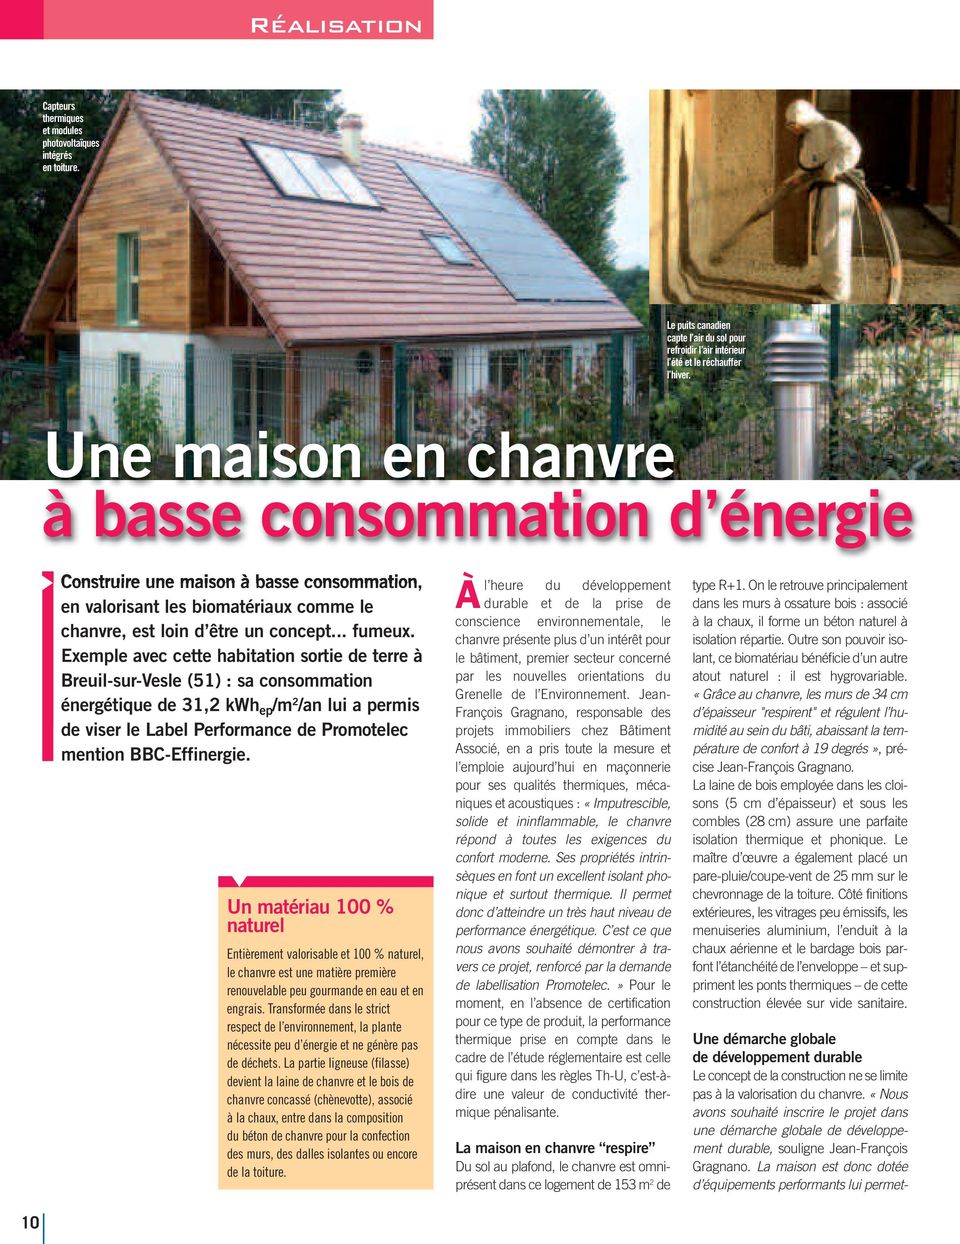 Exemple avec cette habitation sortie de terre à Breuil-sur-Vesle (51) : sa consommation énergétique de 31,2 kwh ep /m 2 /an lui a permis de viser le Label Performance de Promotelec mention